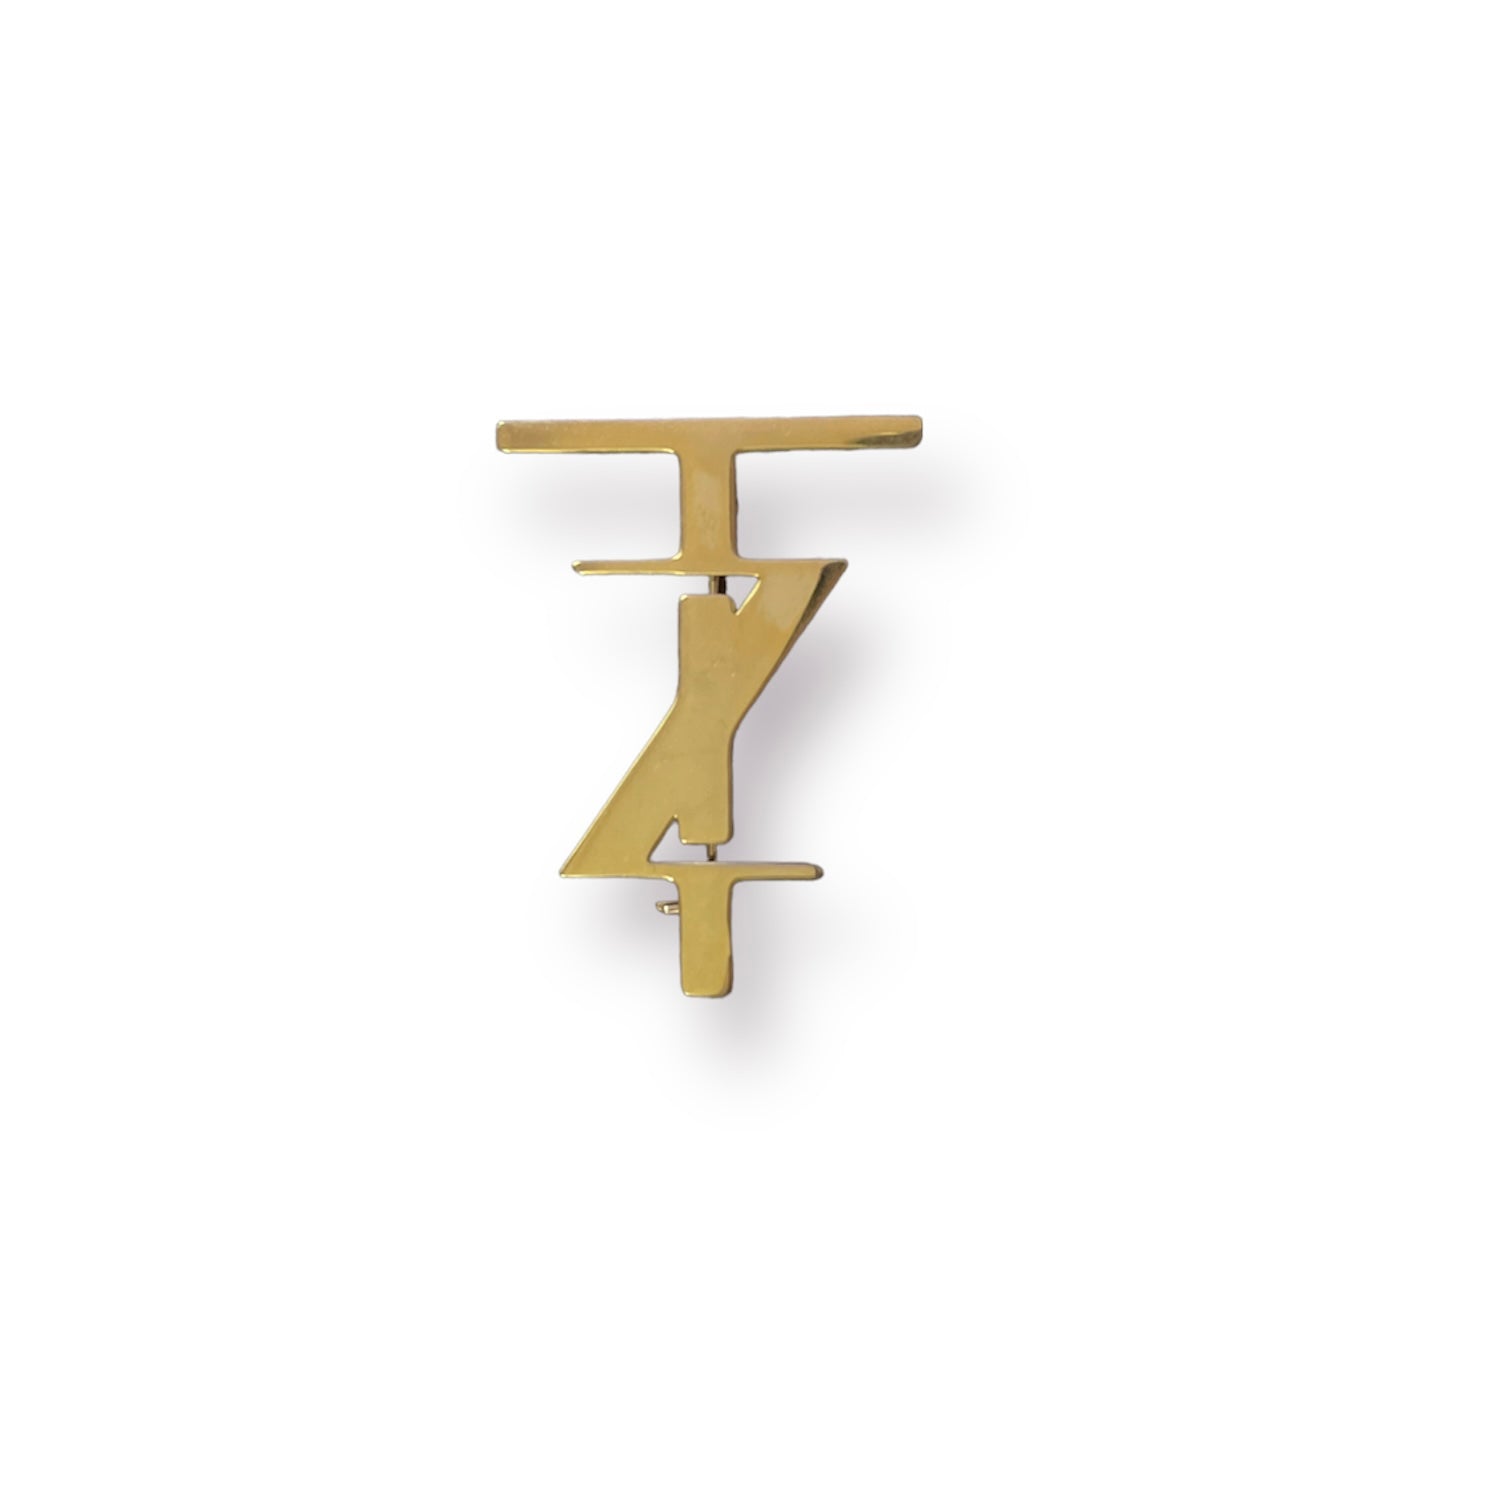 TZ Monogram Brooch - GOLD